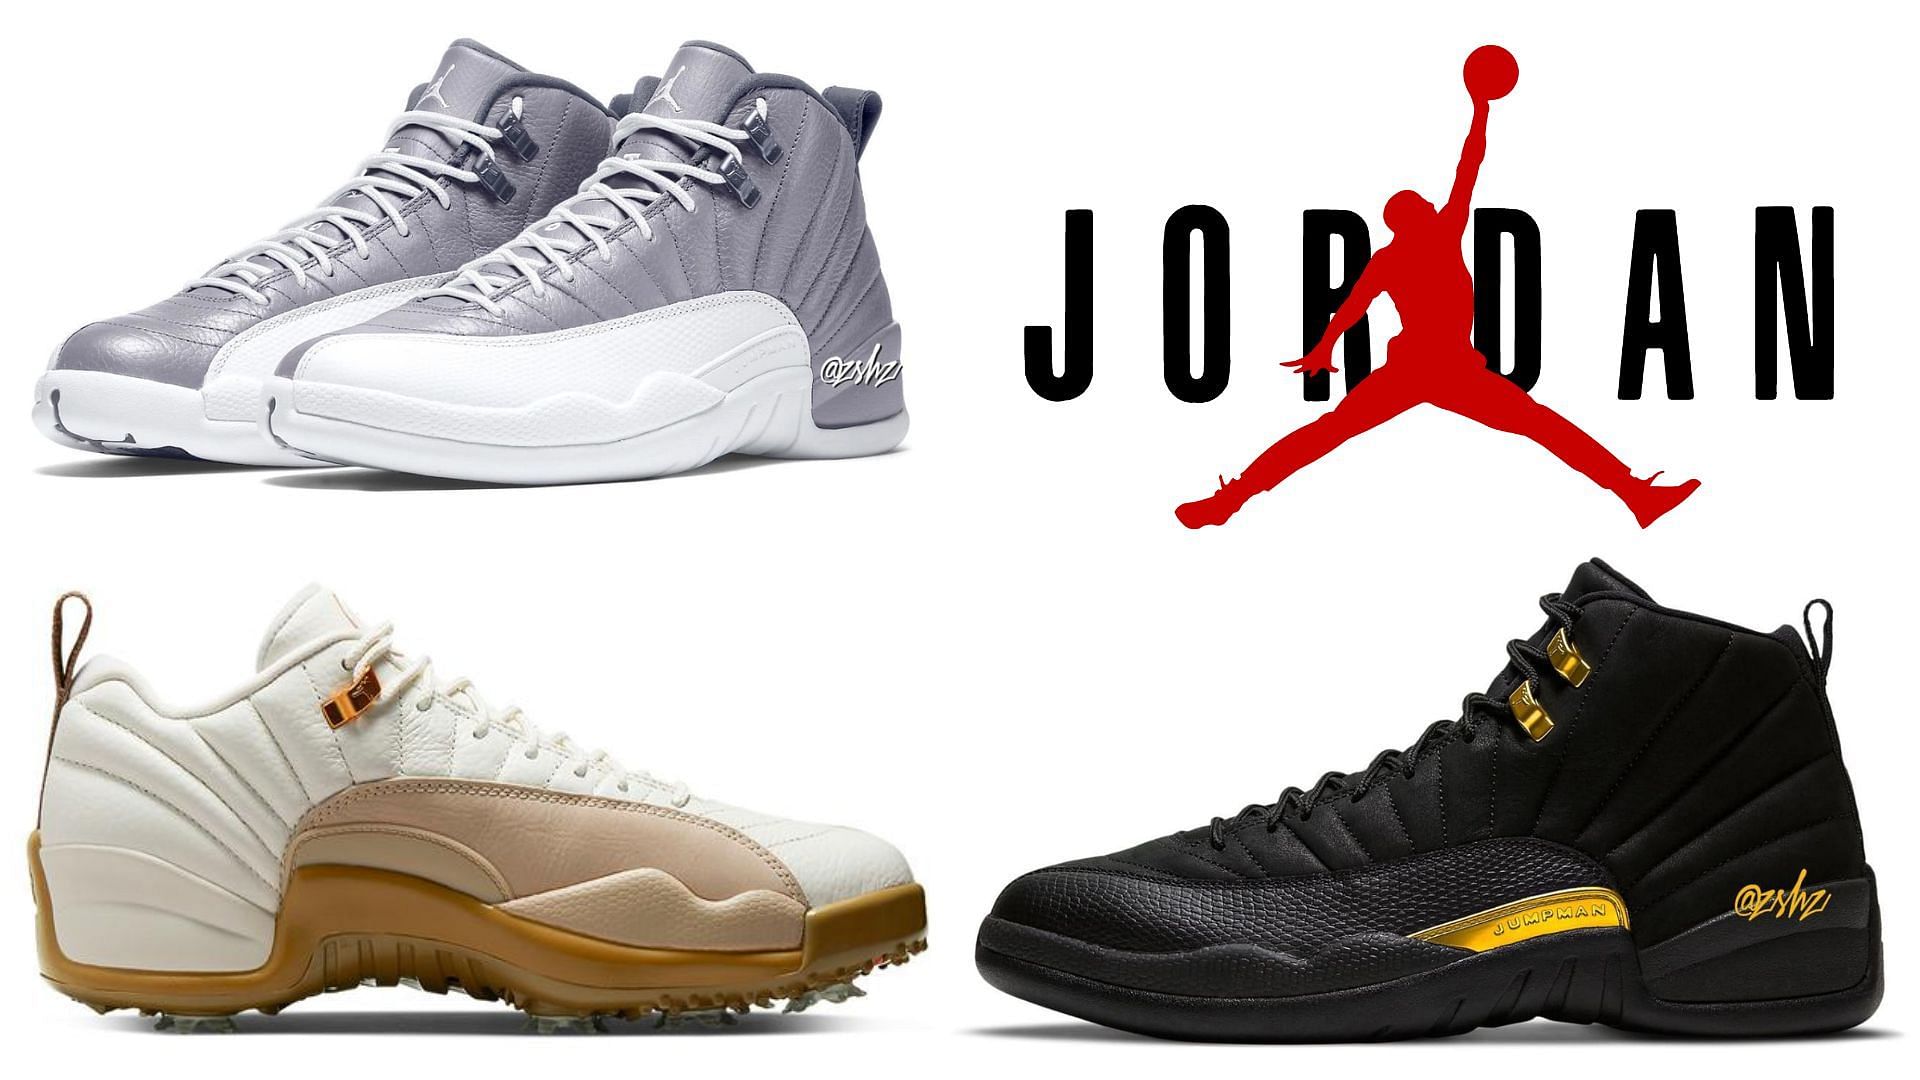 Upcoming Air Jordan 12 shoes of 2022 (Image via Sportskeeda)